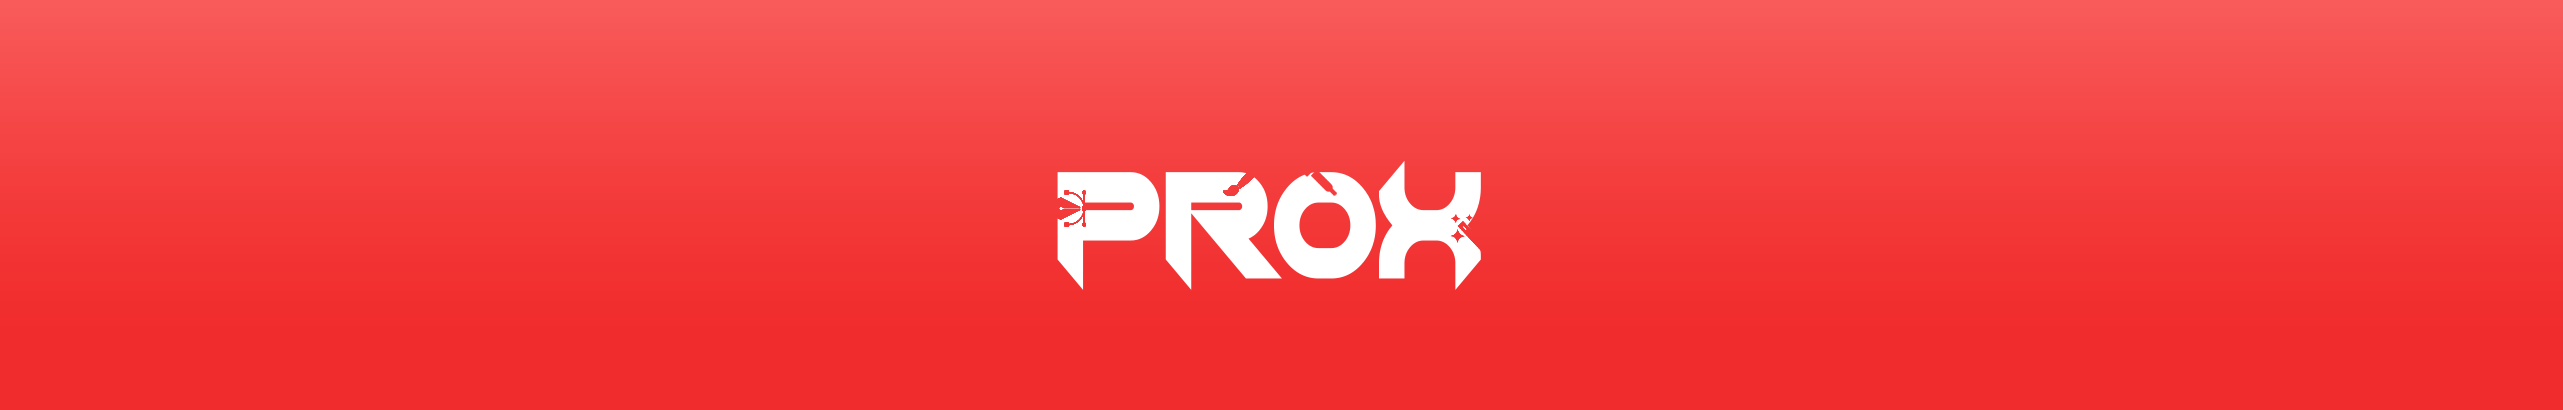 Prox ‎'s profile banner